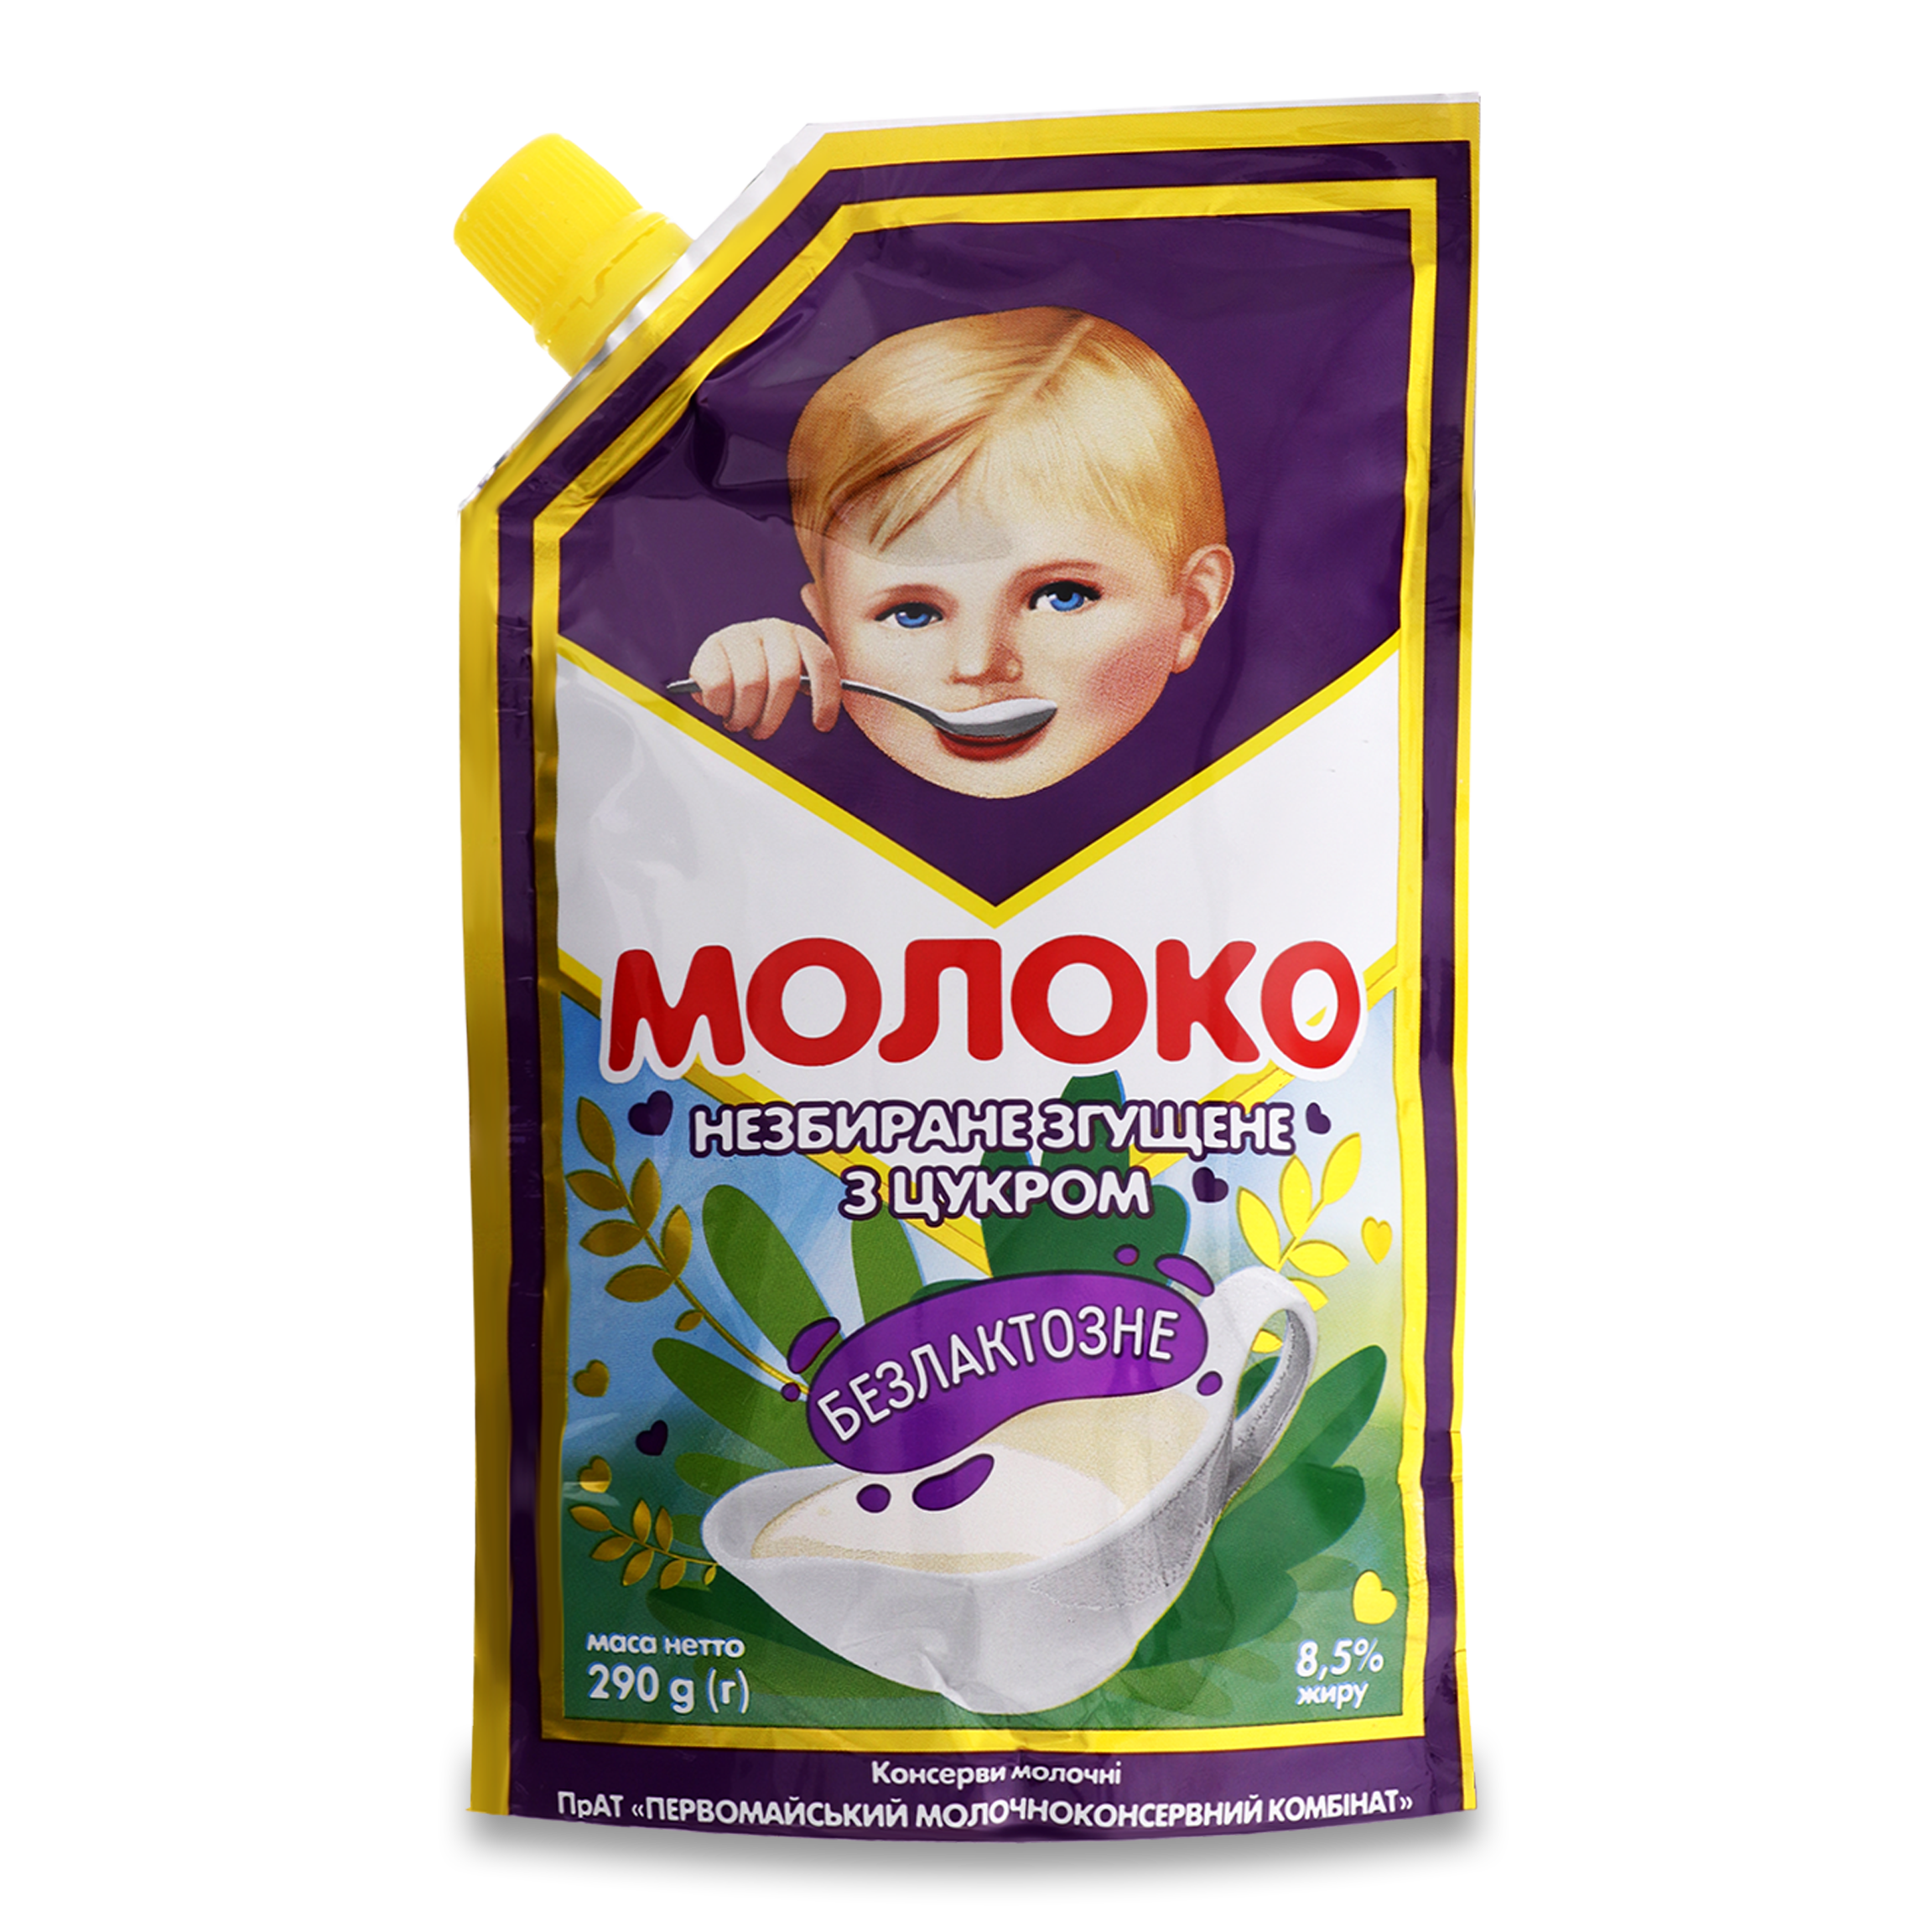 Condensed milk PMKK lactose-free 8.5% 290g